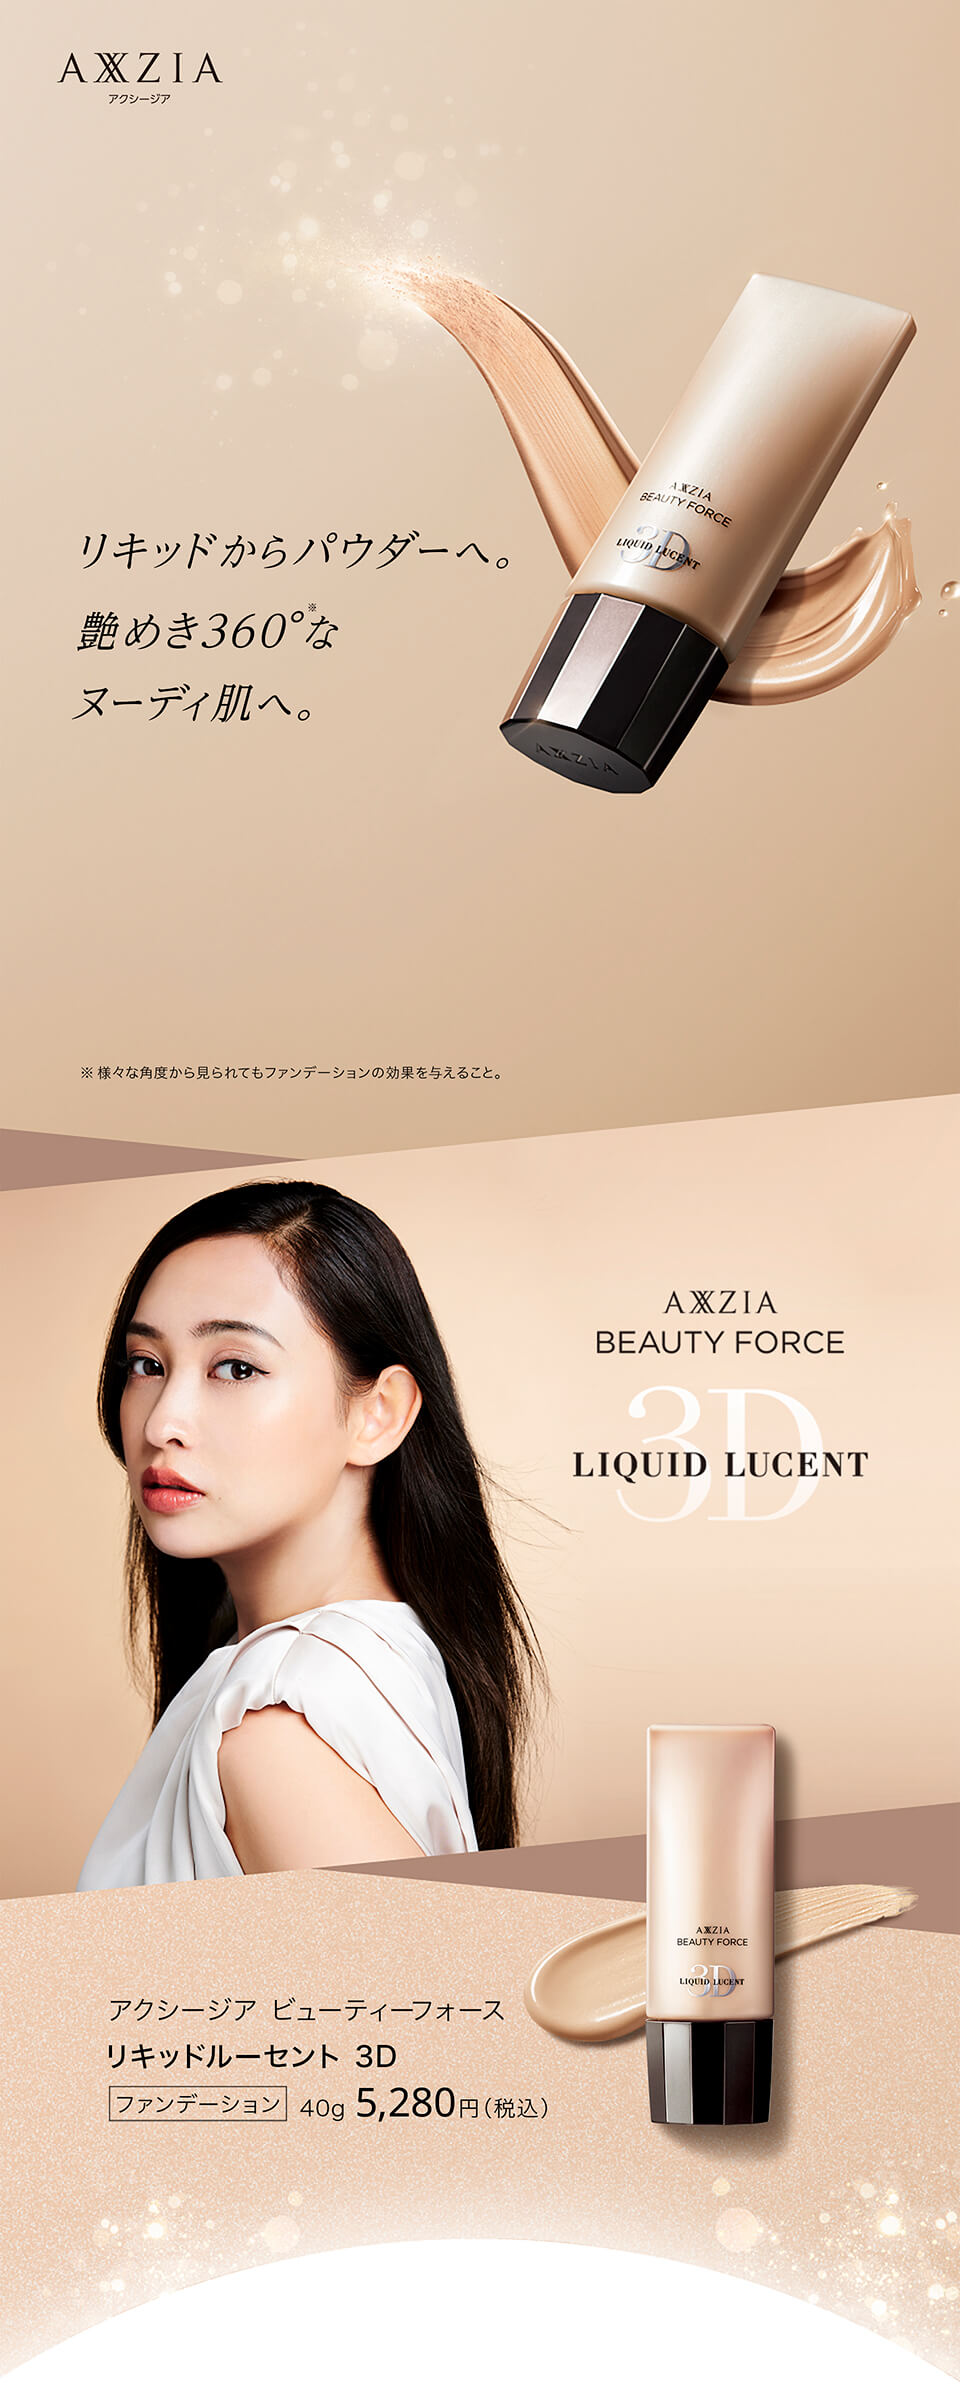 リキッドファンデーション | アクシージア ビューティーフォース リキッドルーセント 3D 40g AXXZIA 化粧品 コスメ メイクアップ 公式  | アクシージア 公式ショップ